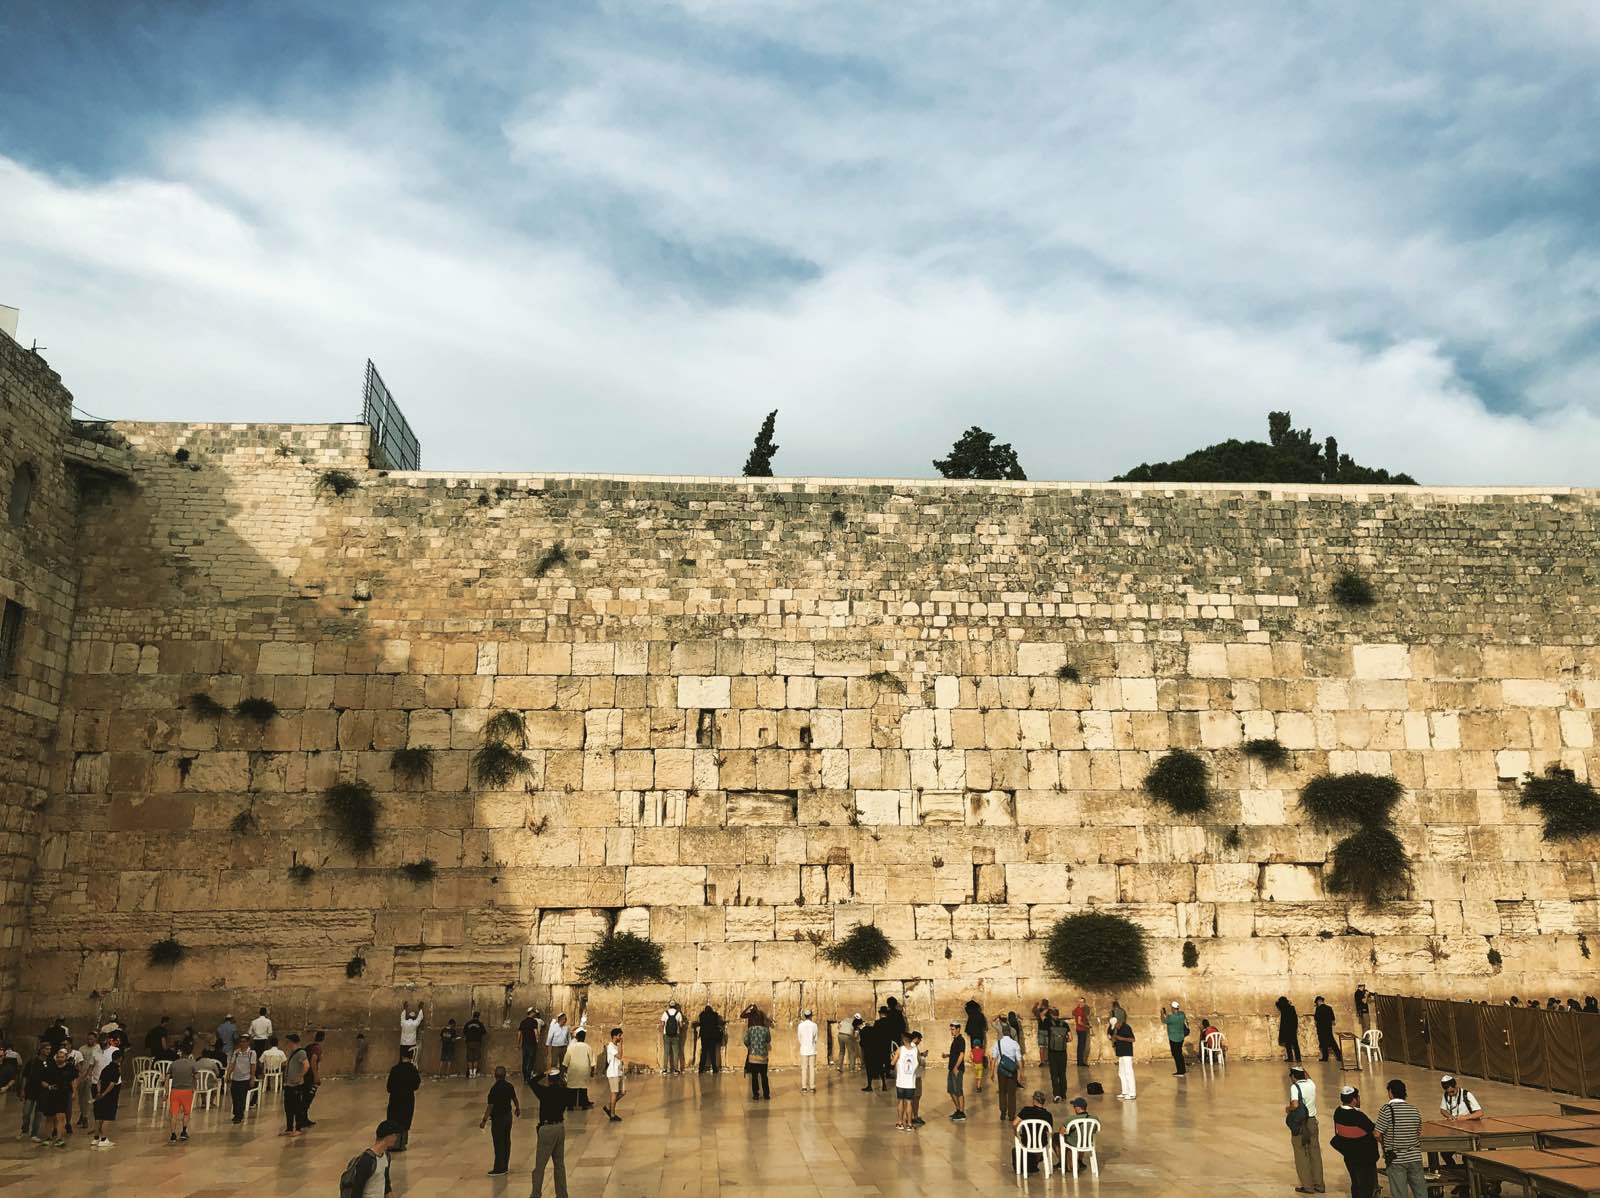 哭墙，犹太教徒至该墙低声祷告，以表示对古神庙的哀悼并期待其恢复的情感…